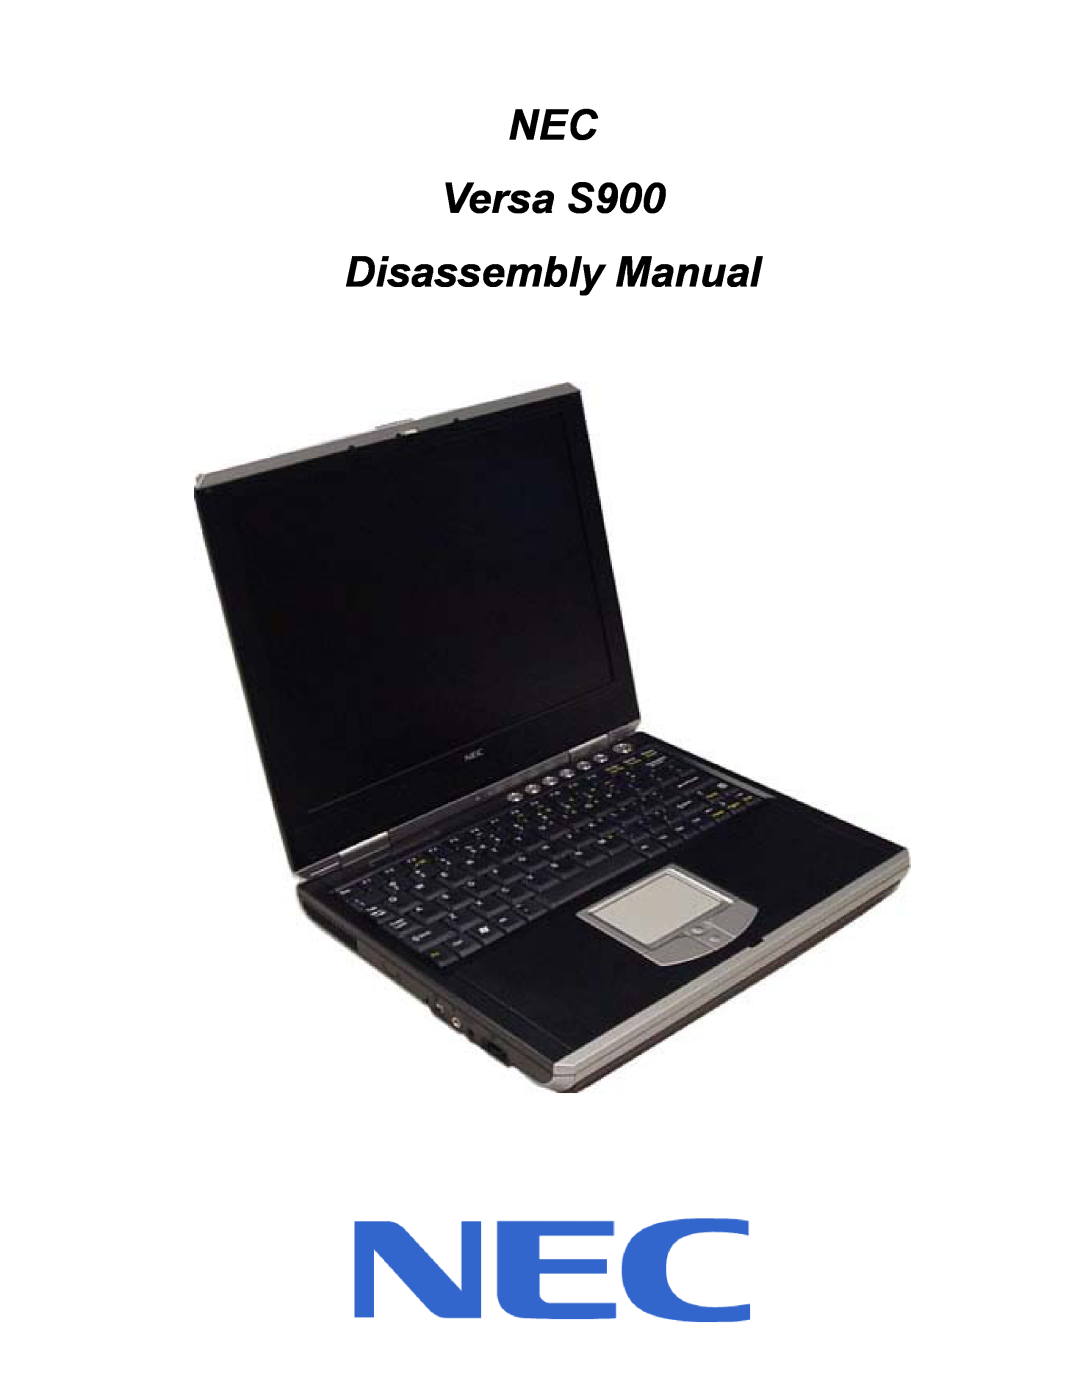 NEC manual NEC Versa S900 Disassembly Manual 